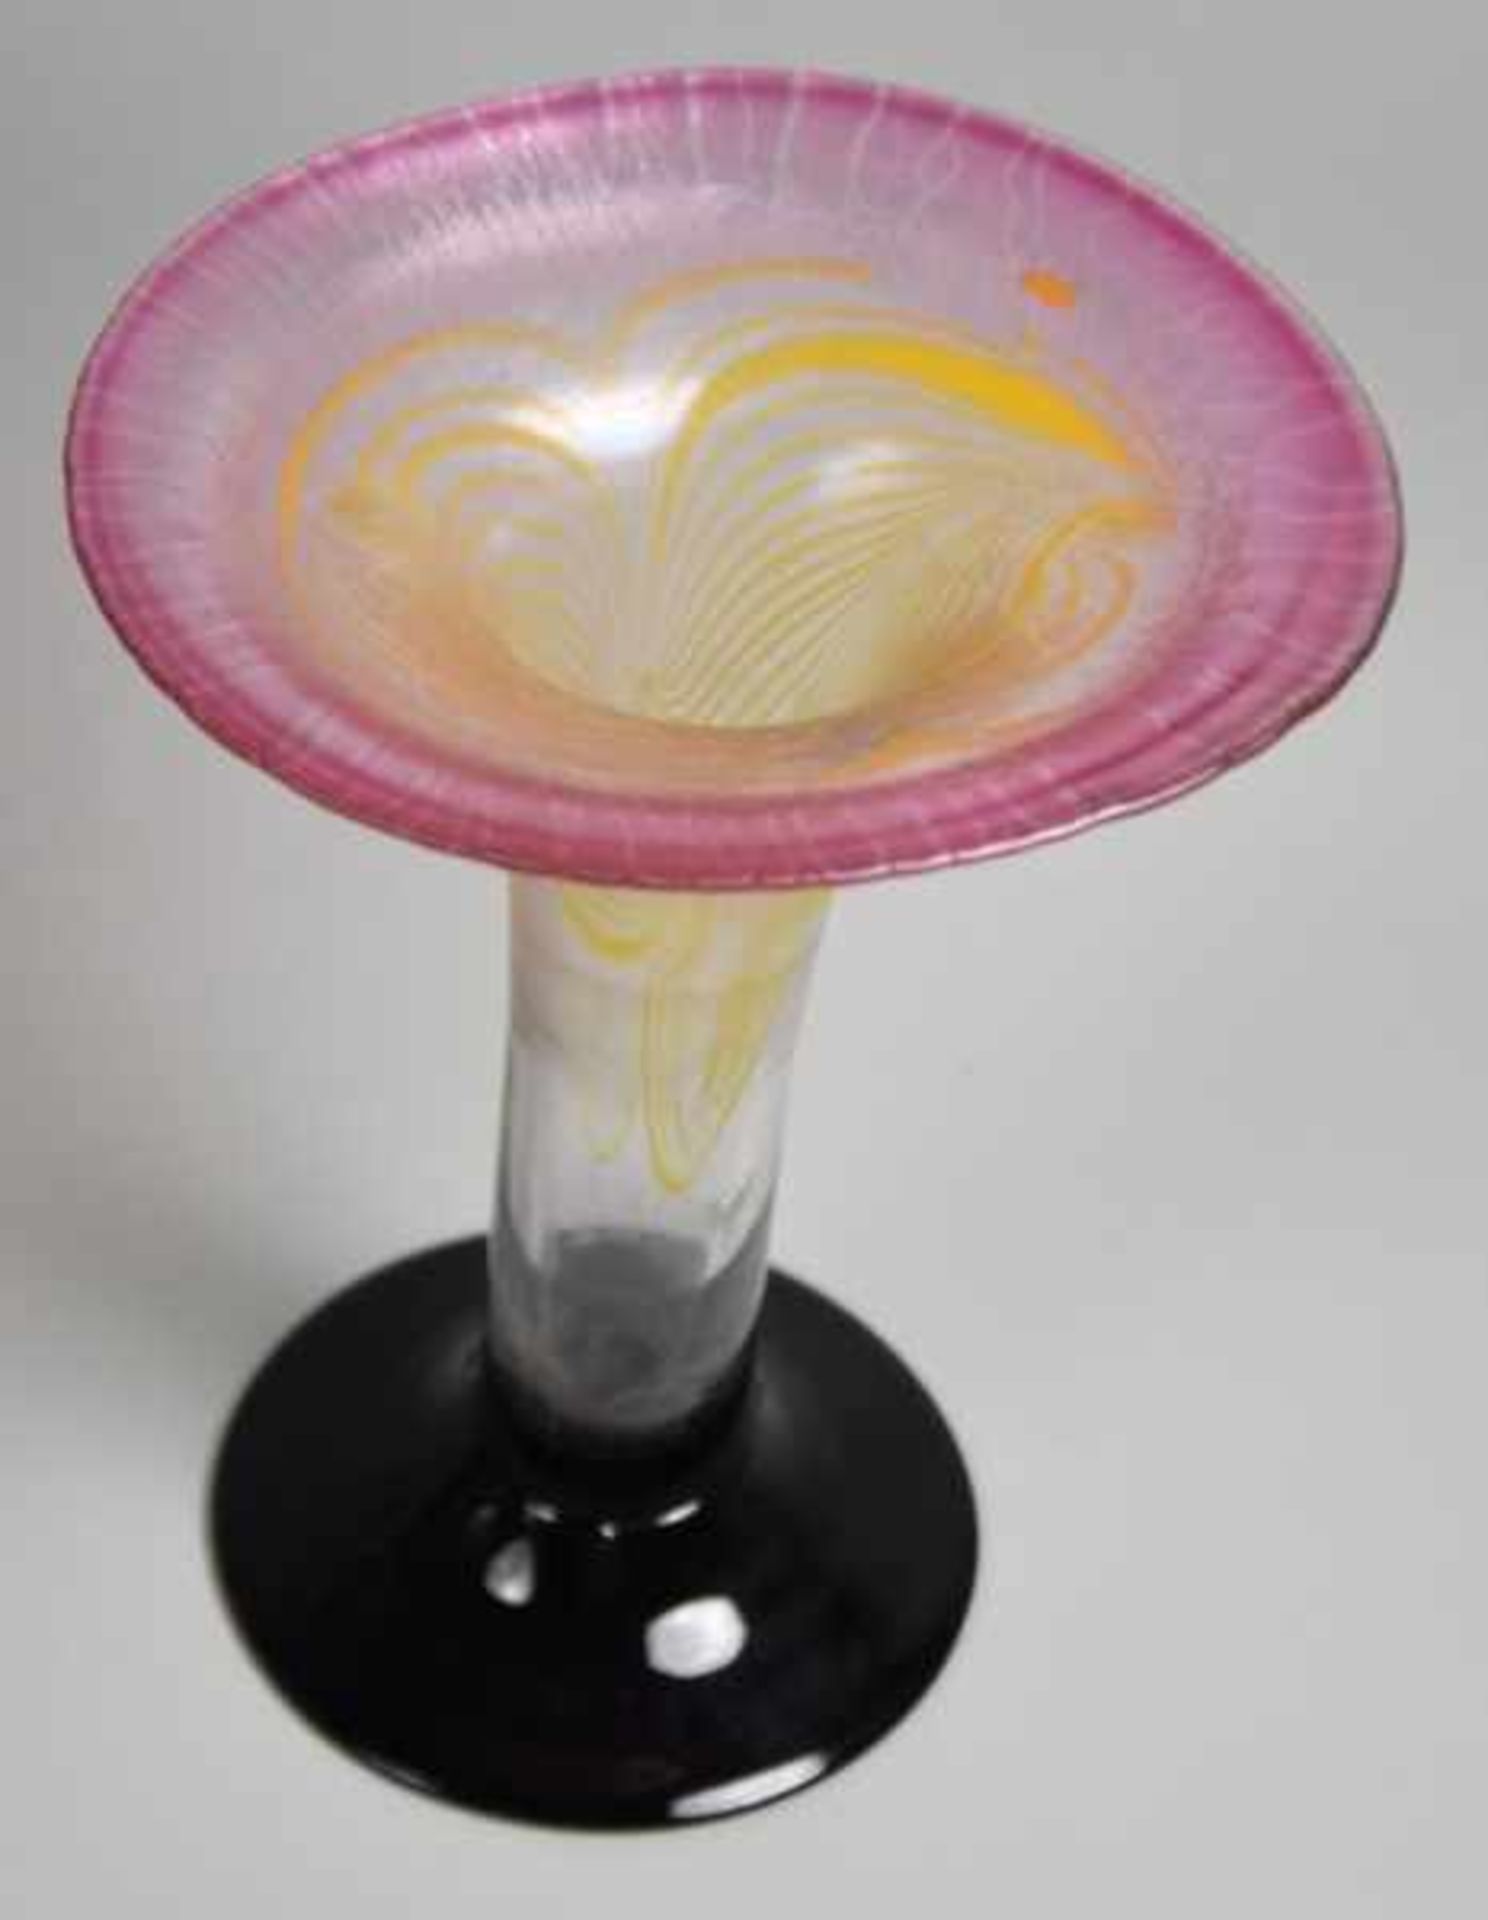 STUDIOGLAS EISCH Tulpenform mit ausgestelltem Rand, eingeschlossene gelbe Glasspiralen, rosa - Bild 2 aus 3